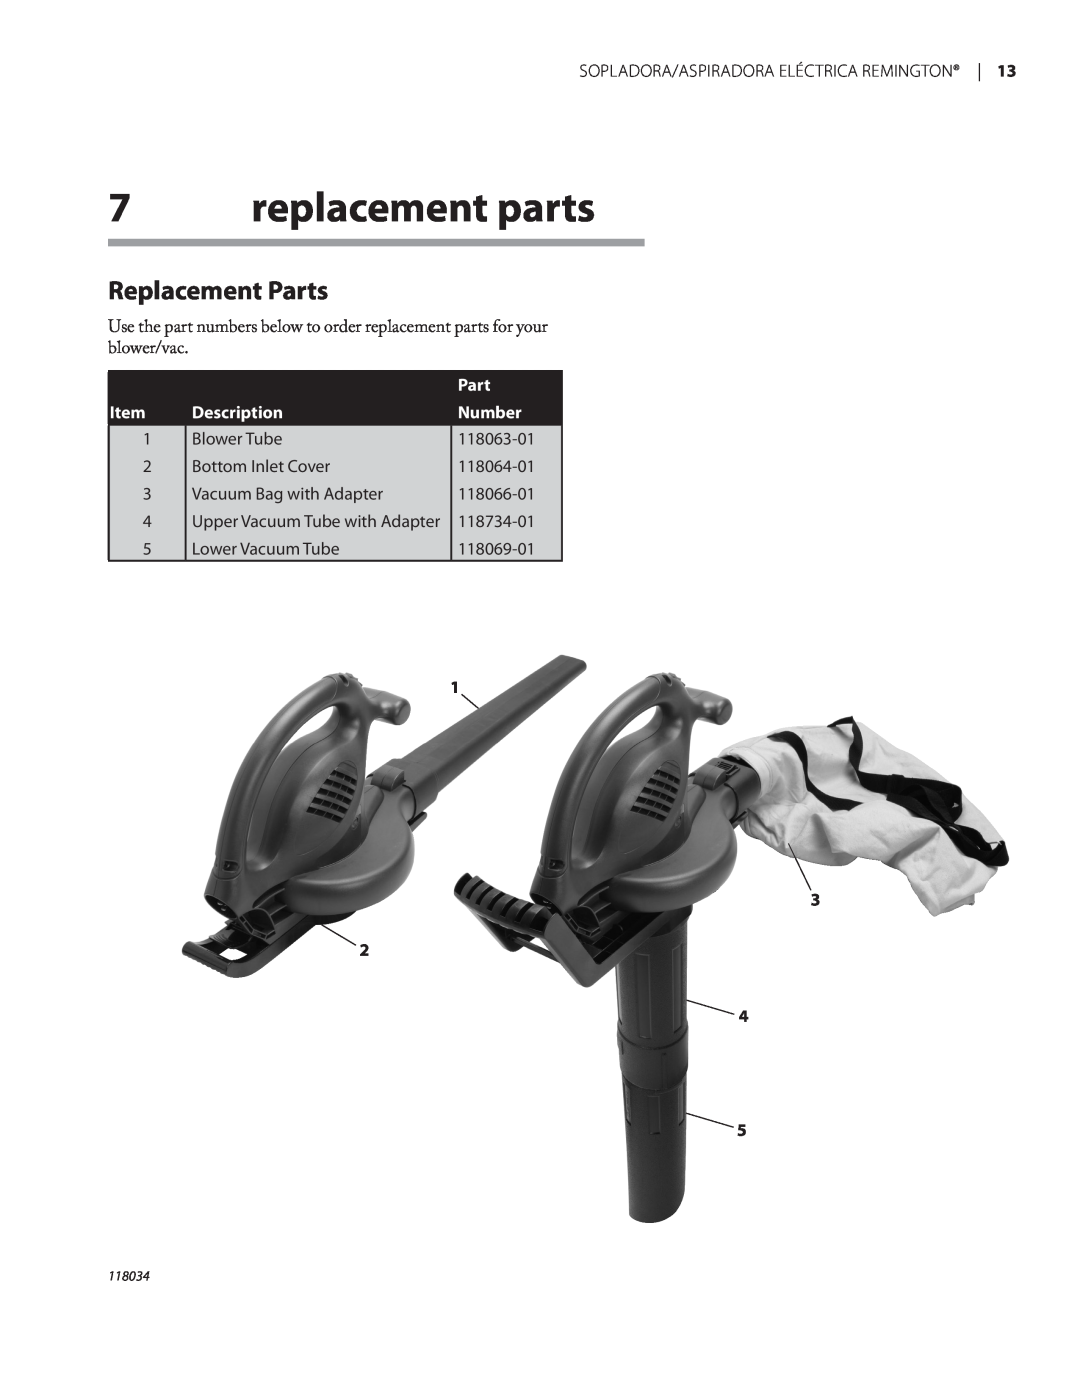 Remington BV12199A owner manual replacement parts, Replacement Parts, Description, Number 